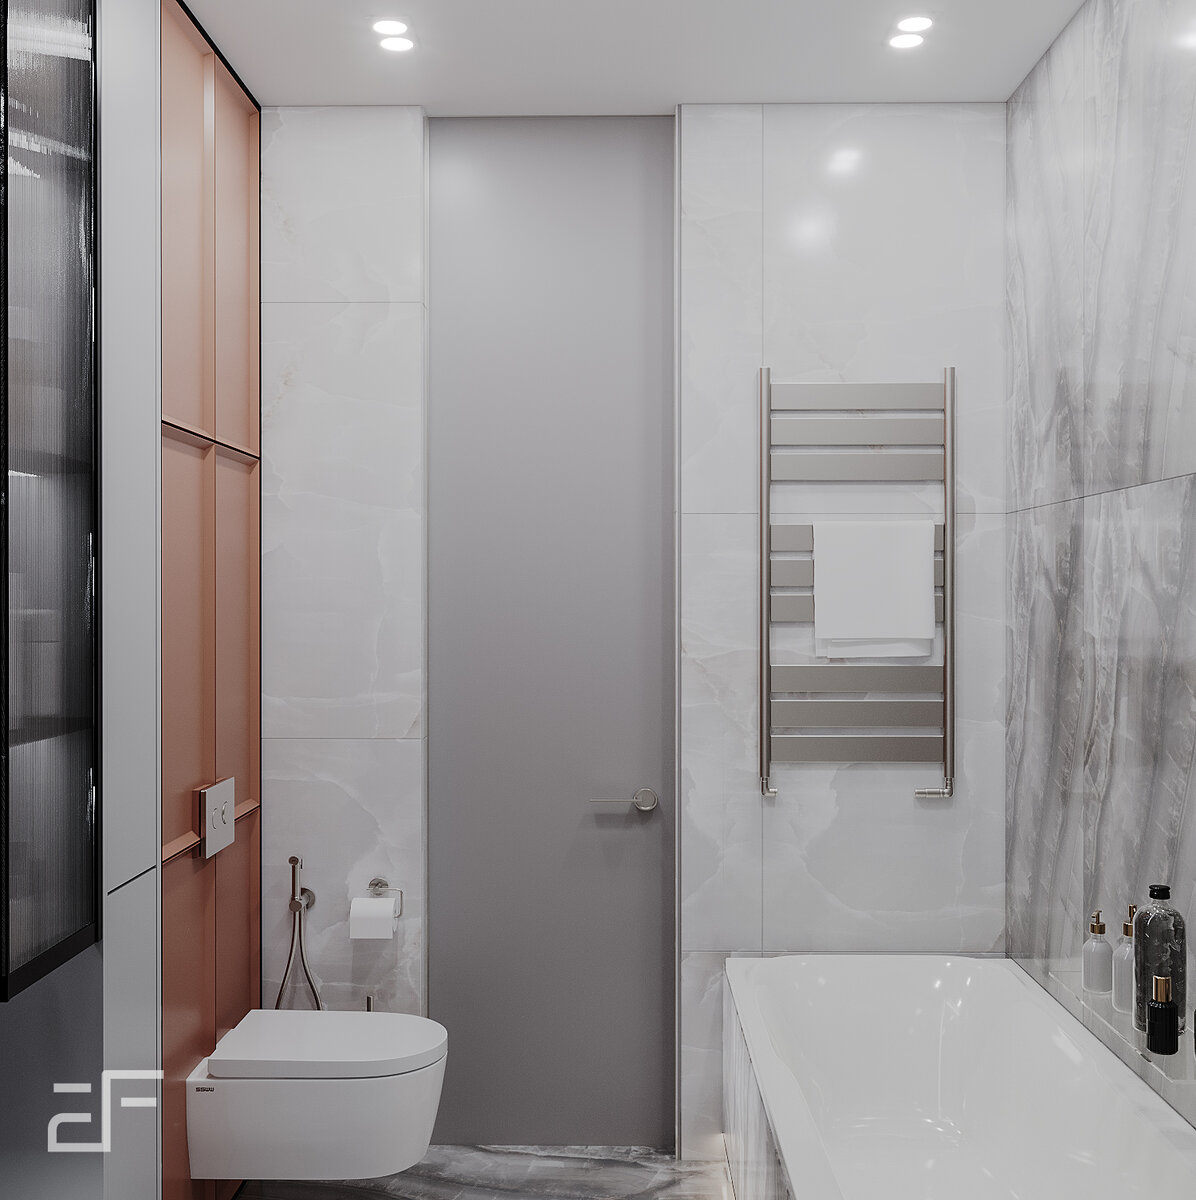 Дизайн ванной комнаты в современном стиле фото с туалетом